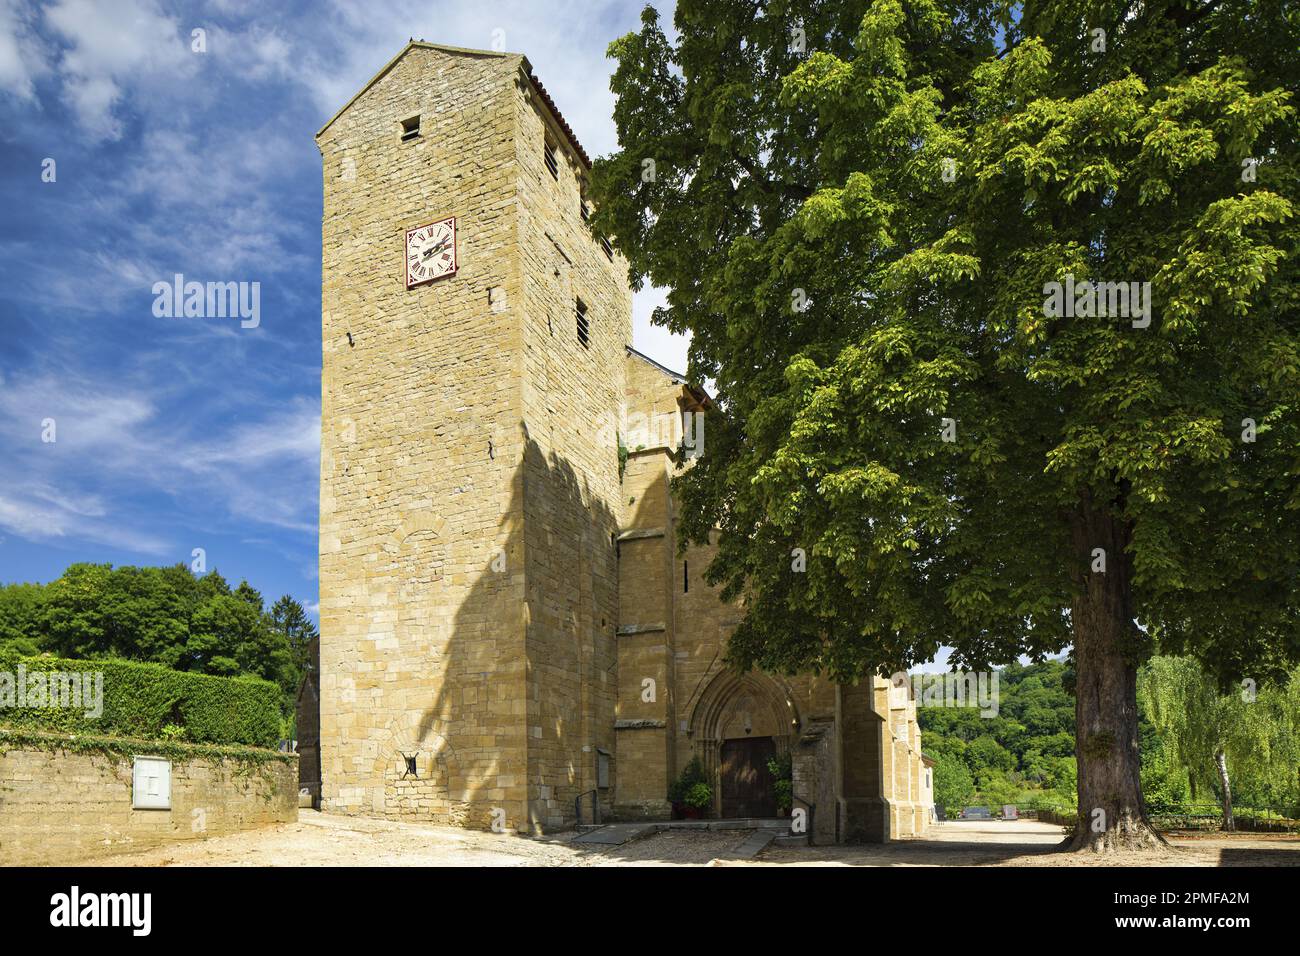 France, Meurthe et Moselle, Longuyon, Sainte Agathe de Longuyon church  Stock Photo - Alamy